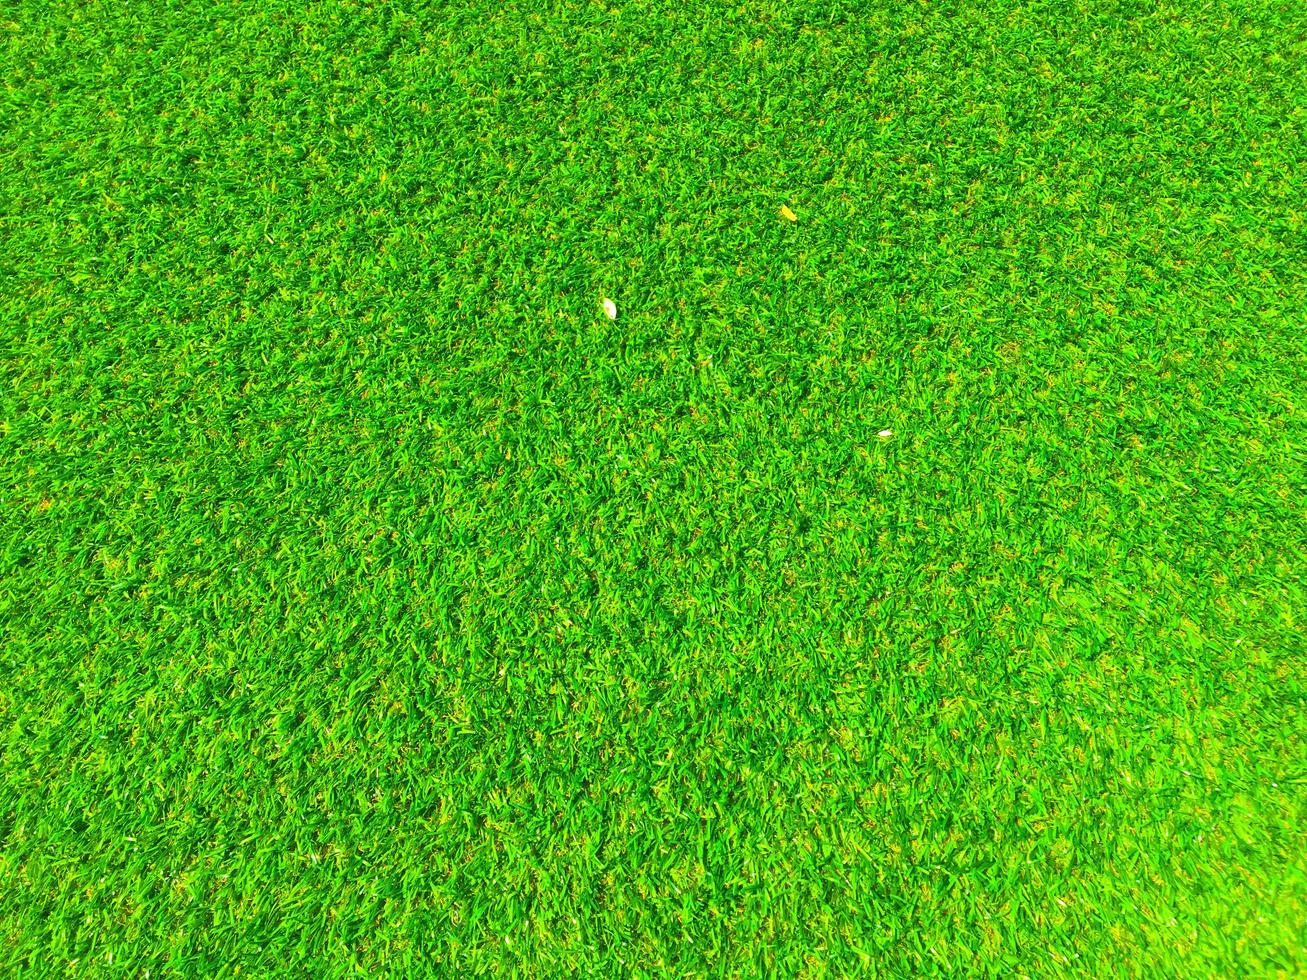 Draufsicht auf grünes Gras Textur Hintergrund. Gestaltungselement. foto